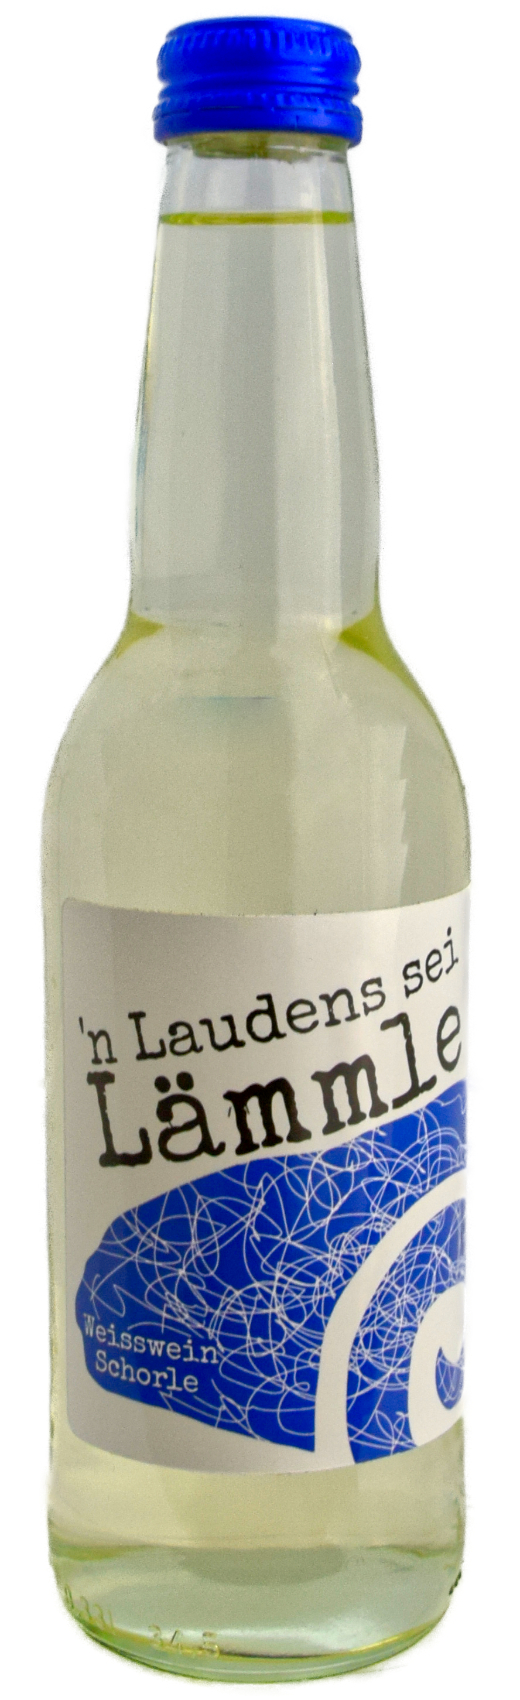 Flaschenbild